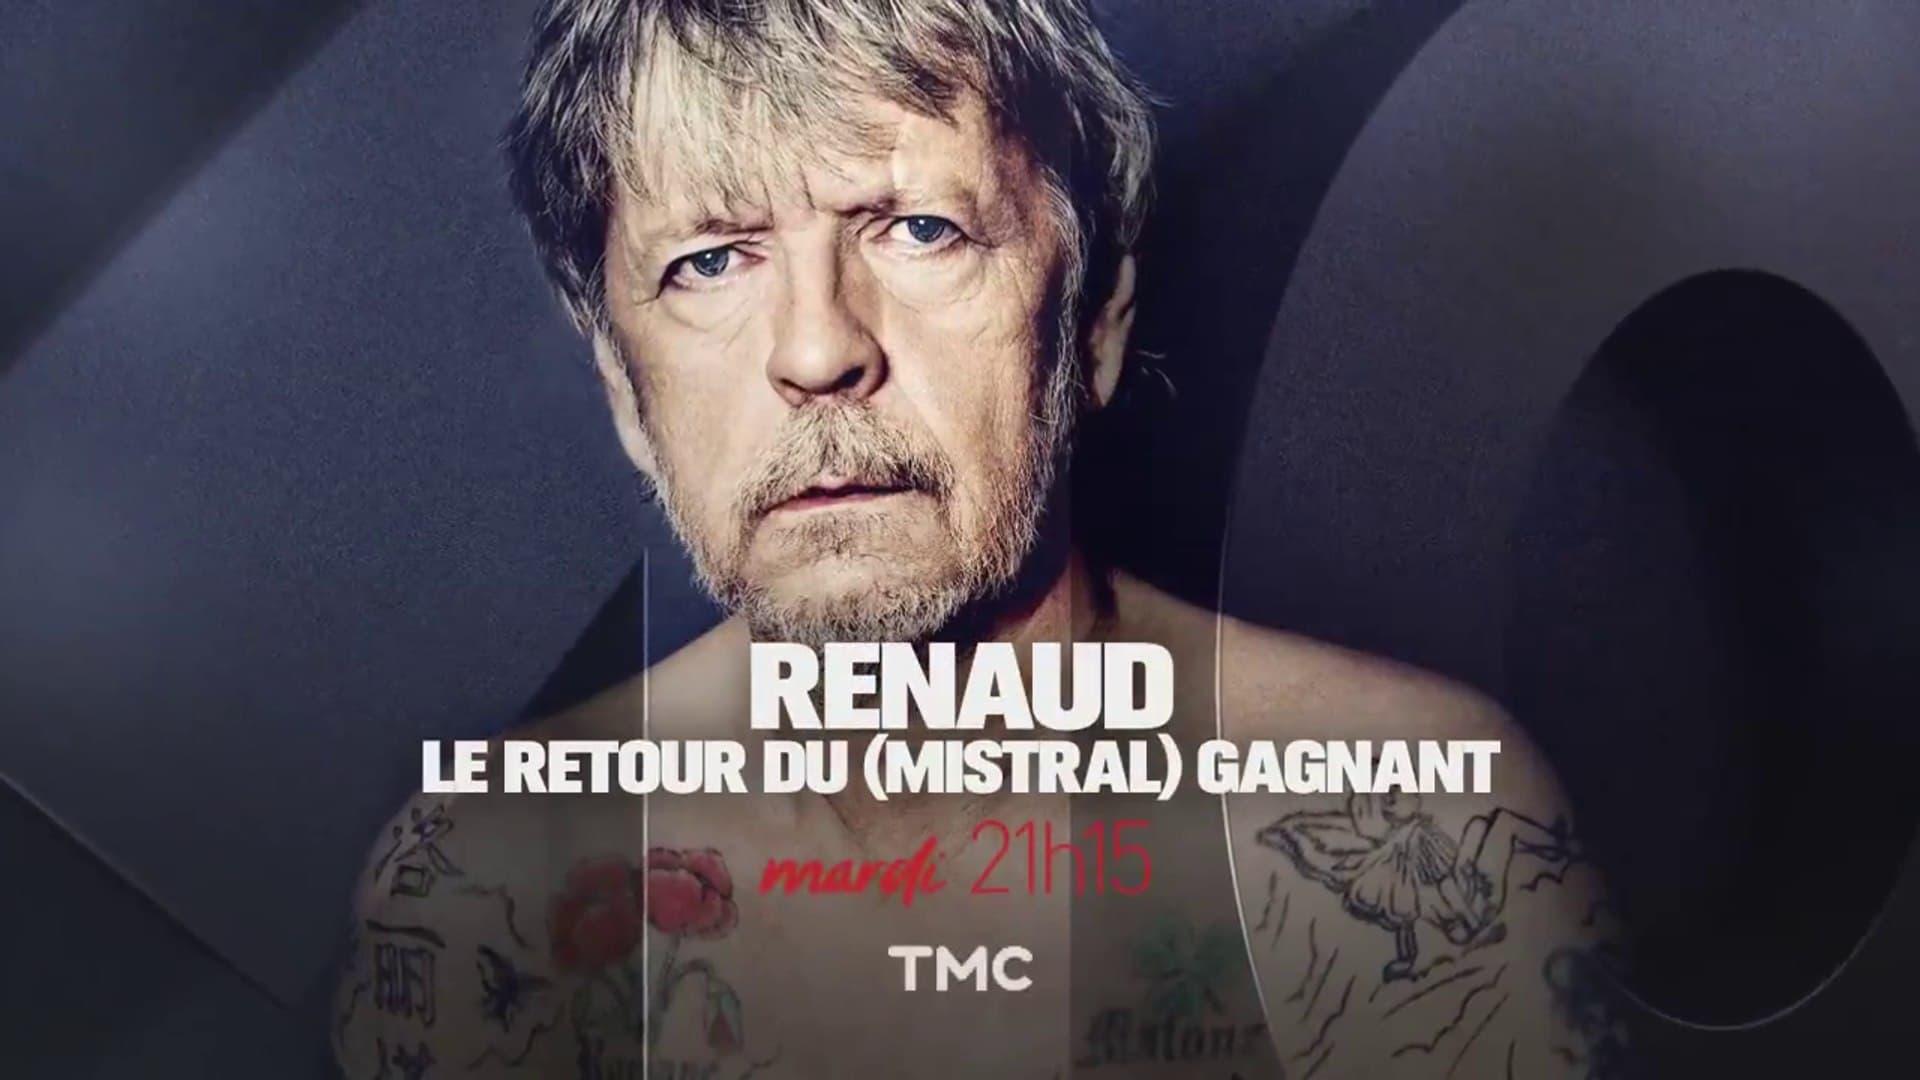 Renaud, le retour du (mistral) gagnant backdrop